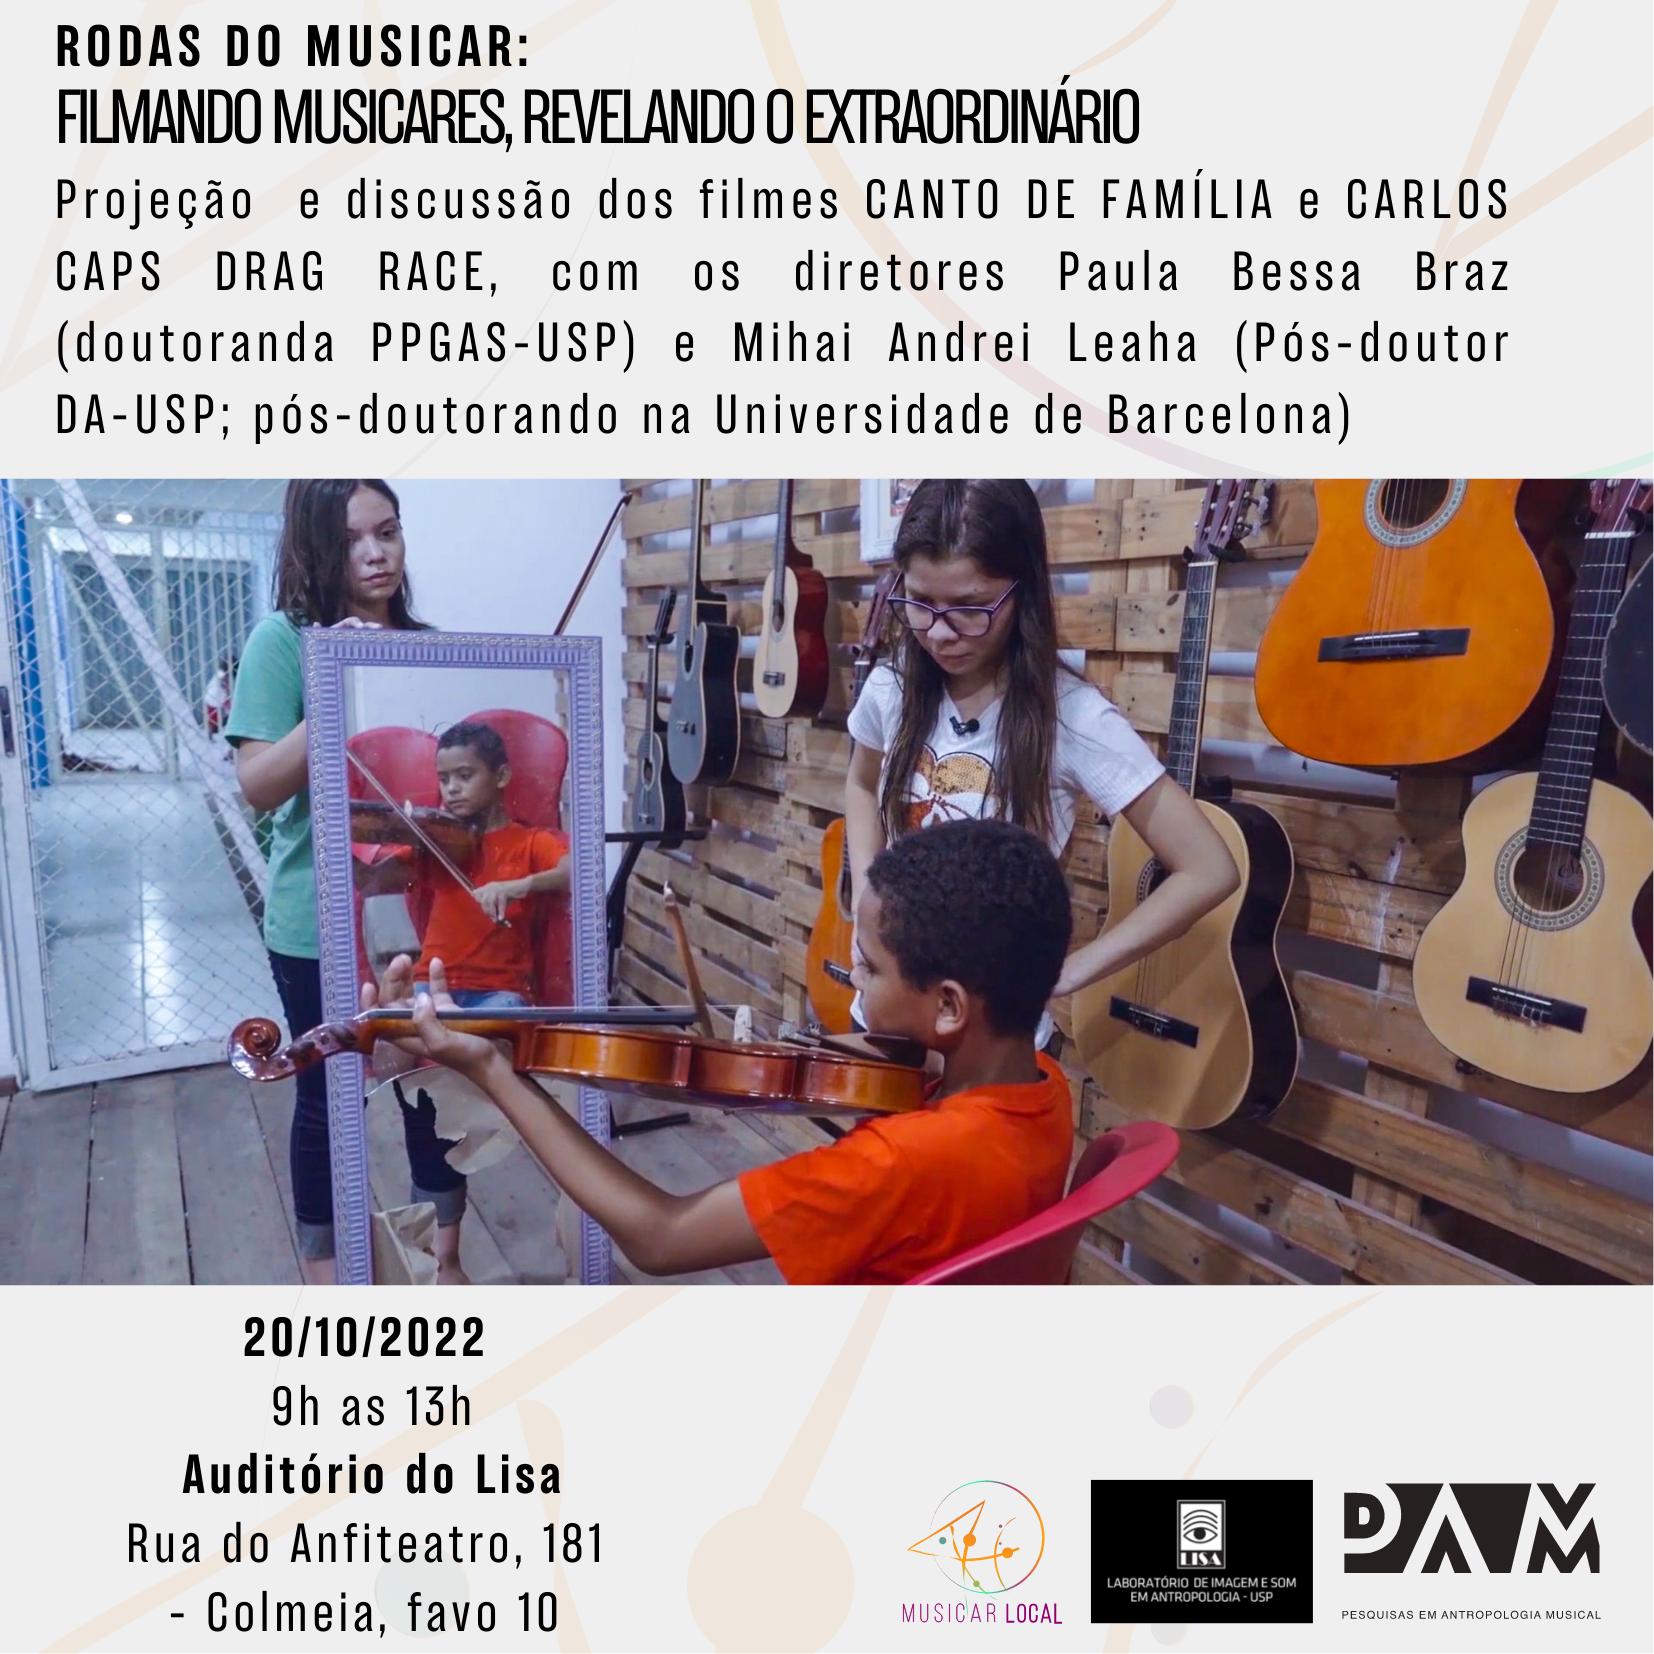 Rodas do Musicar - Session 1: "Filming Musicares, revealing the extraordinary"